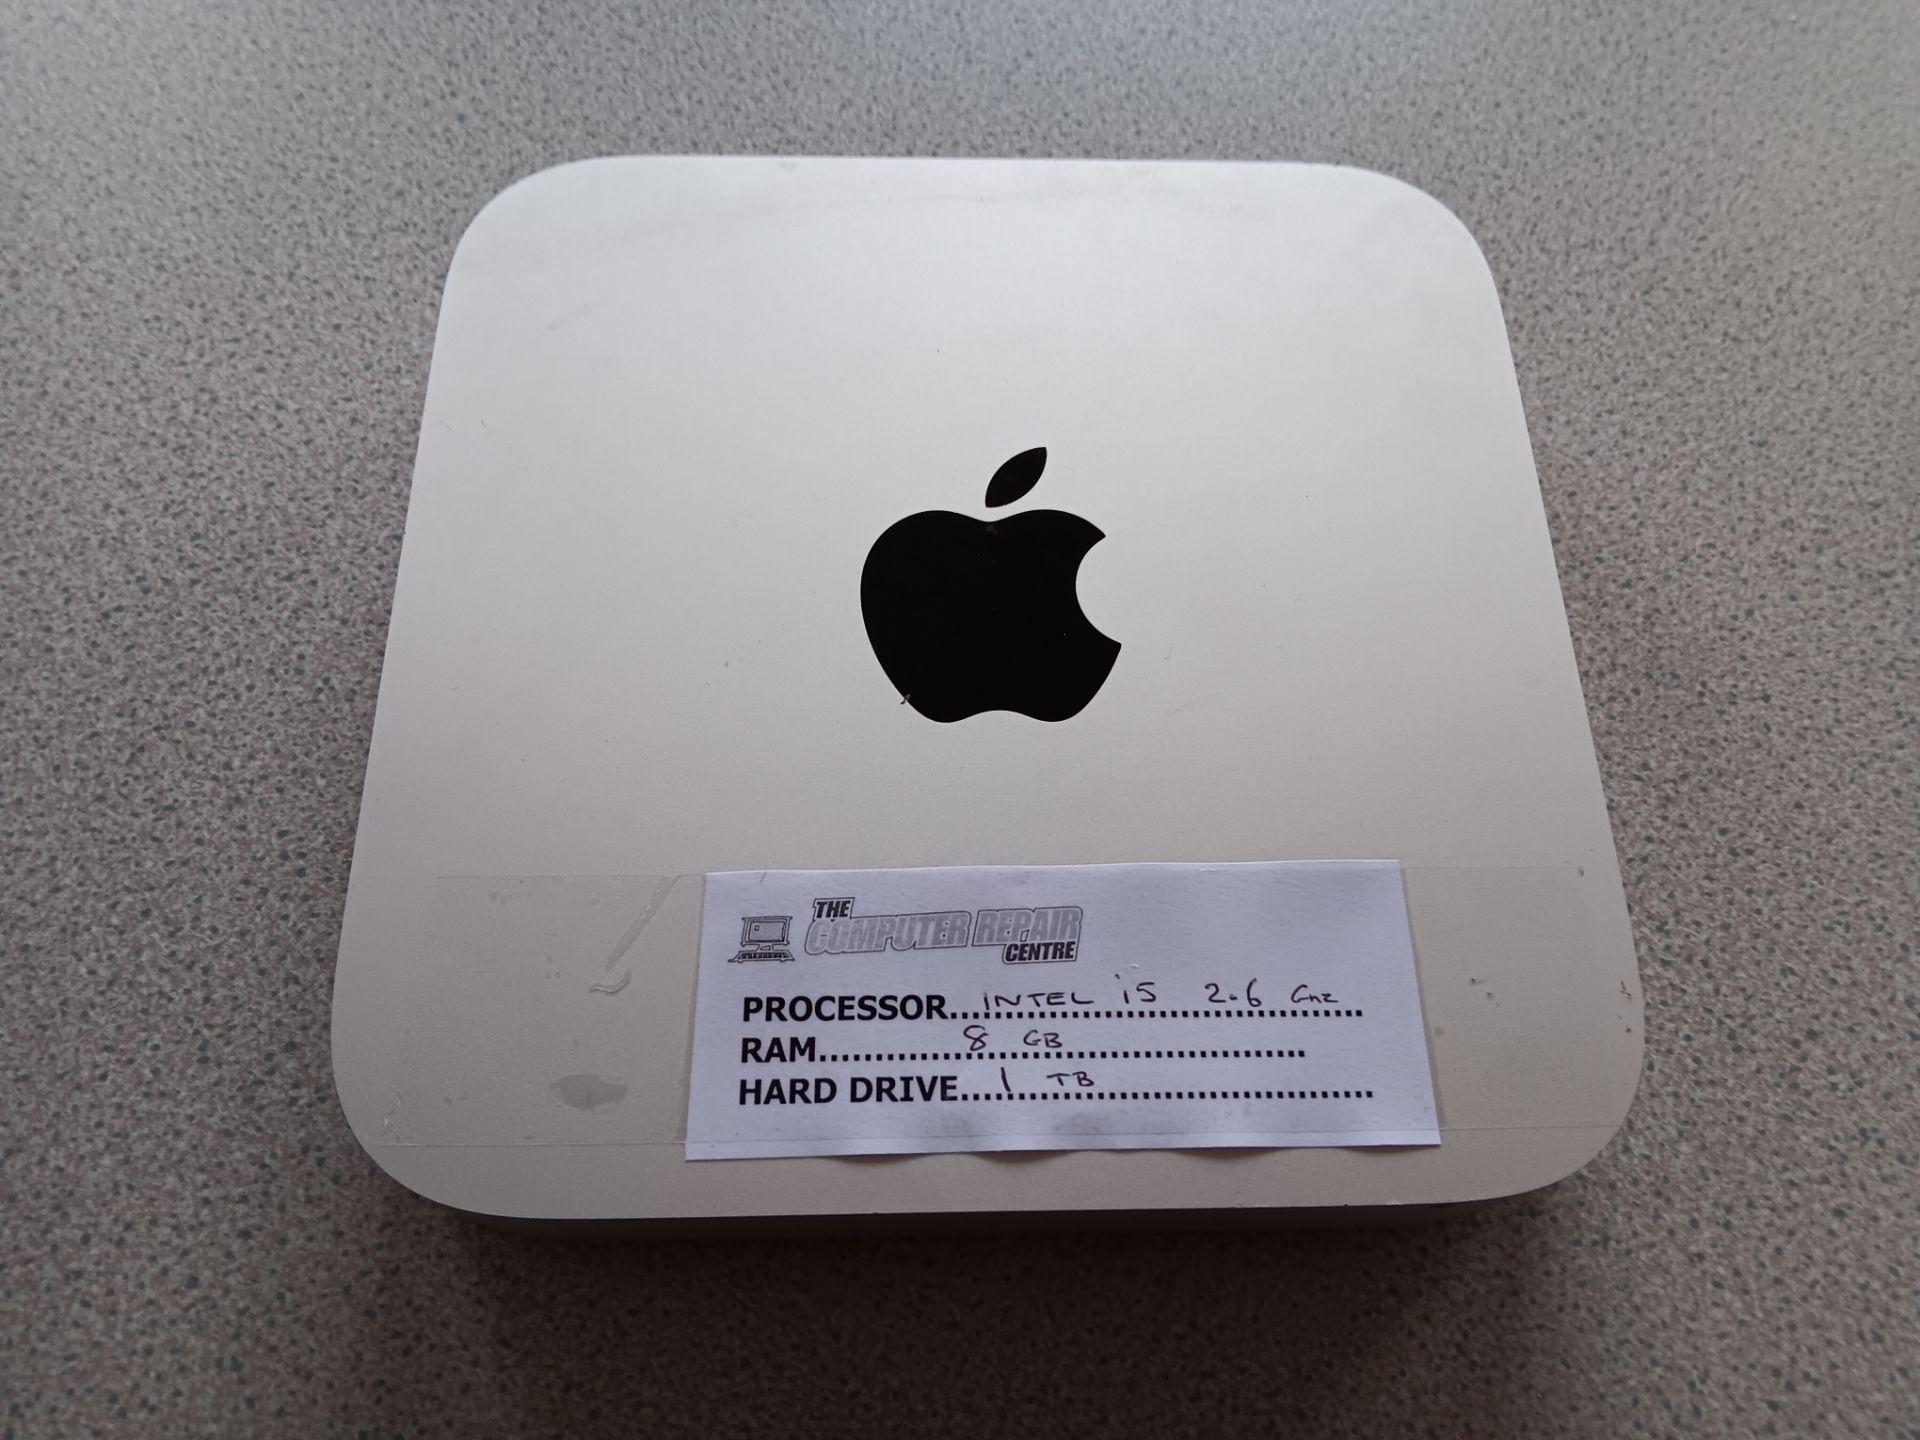 Apple Mac Mini i5 Computer – 2.6GHZ Processor, 8GB Ram & 1TB Hard Drive